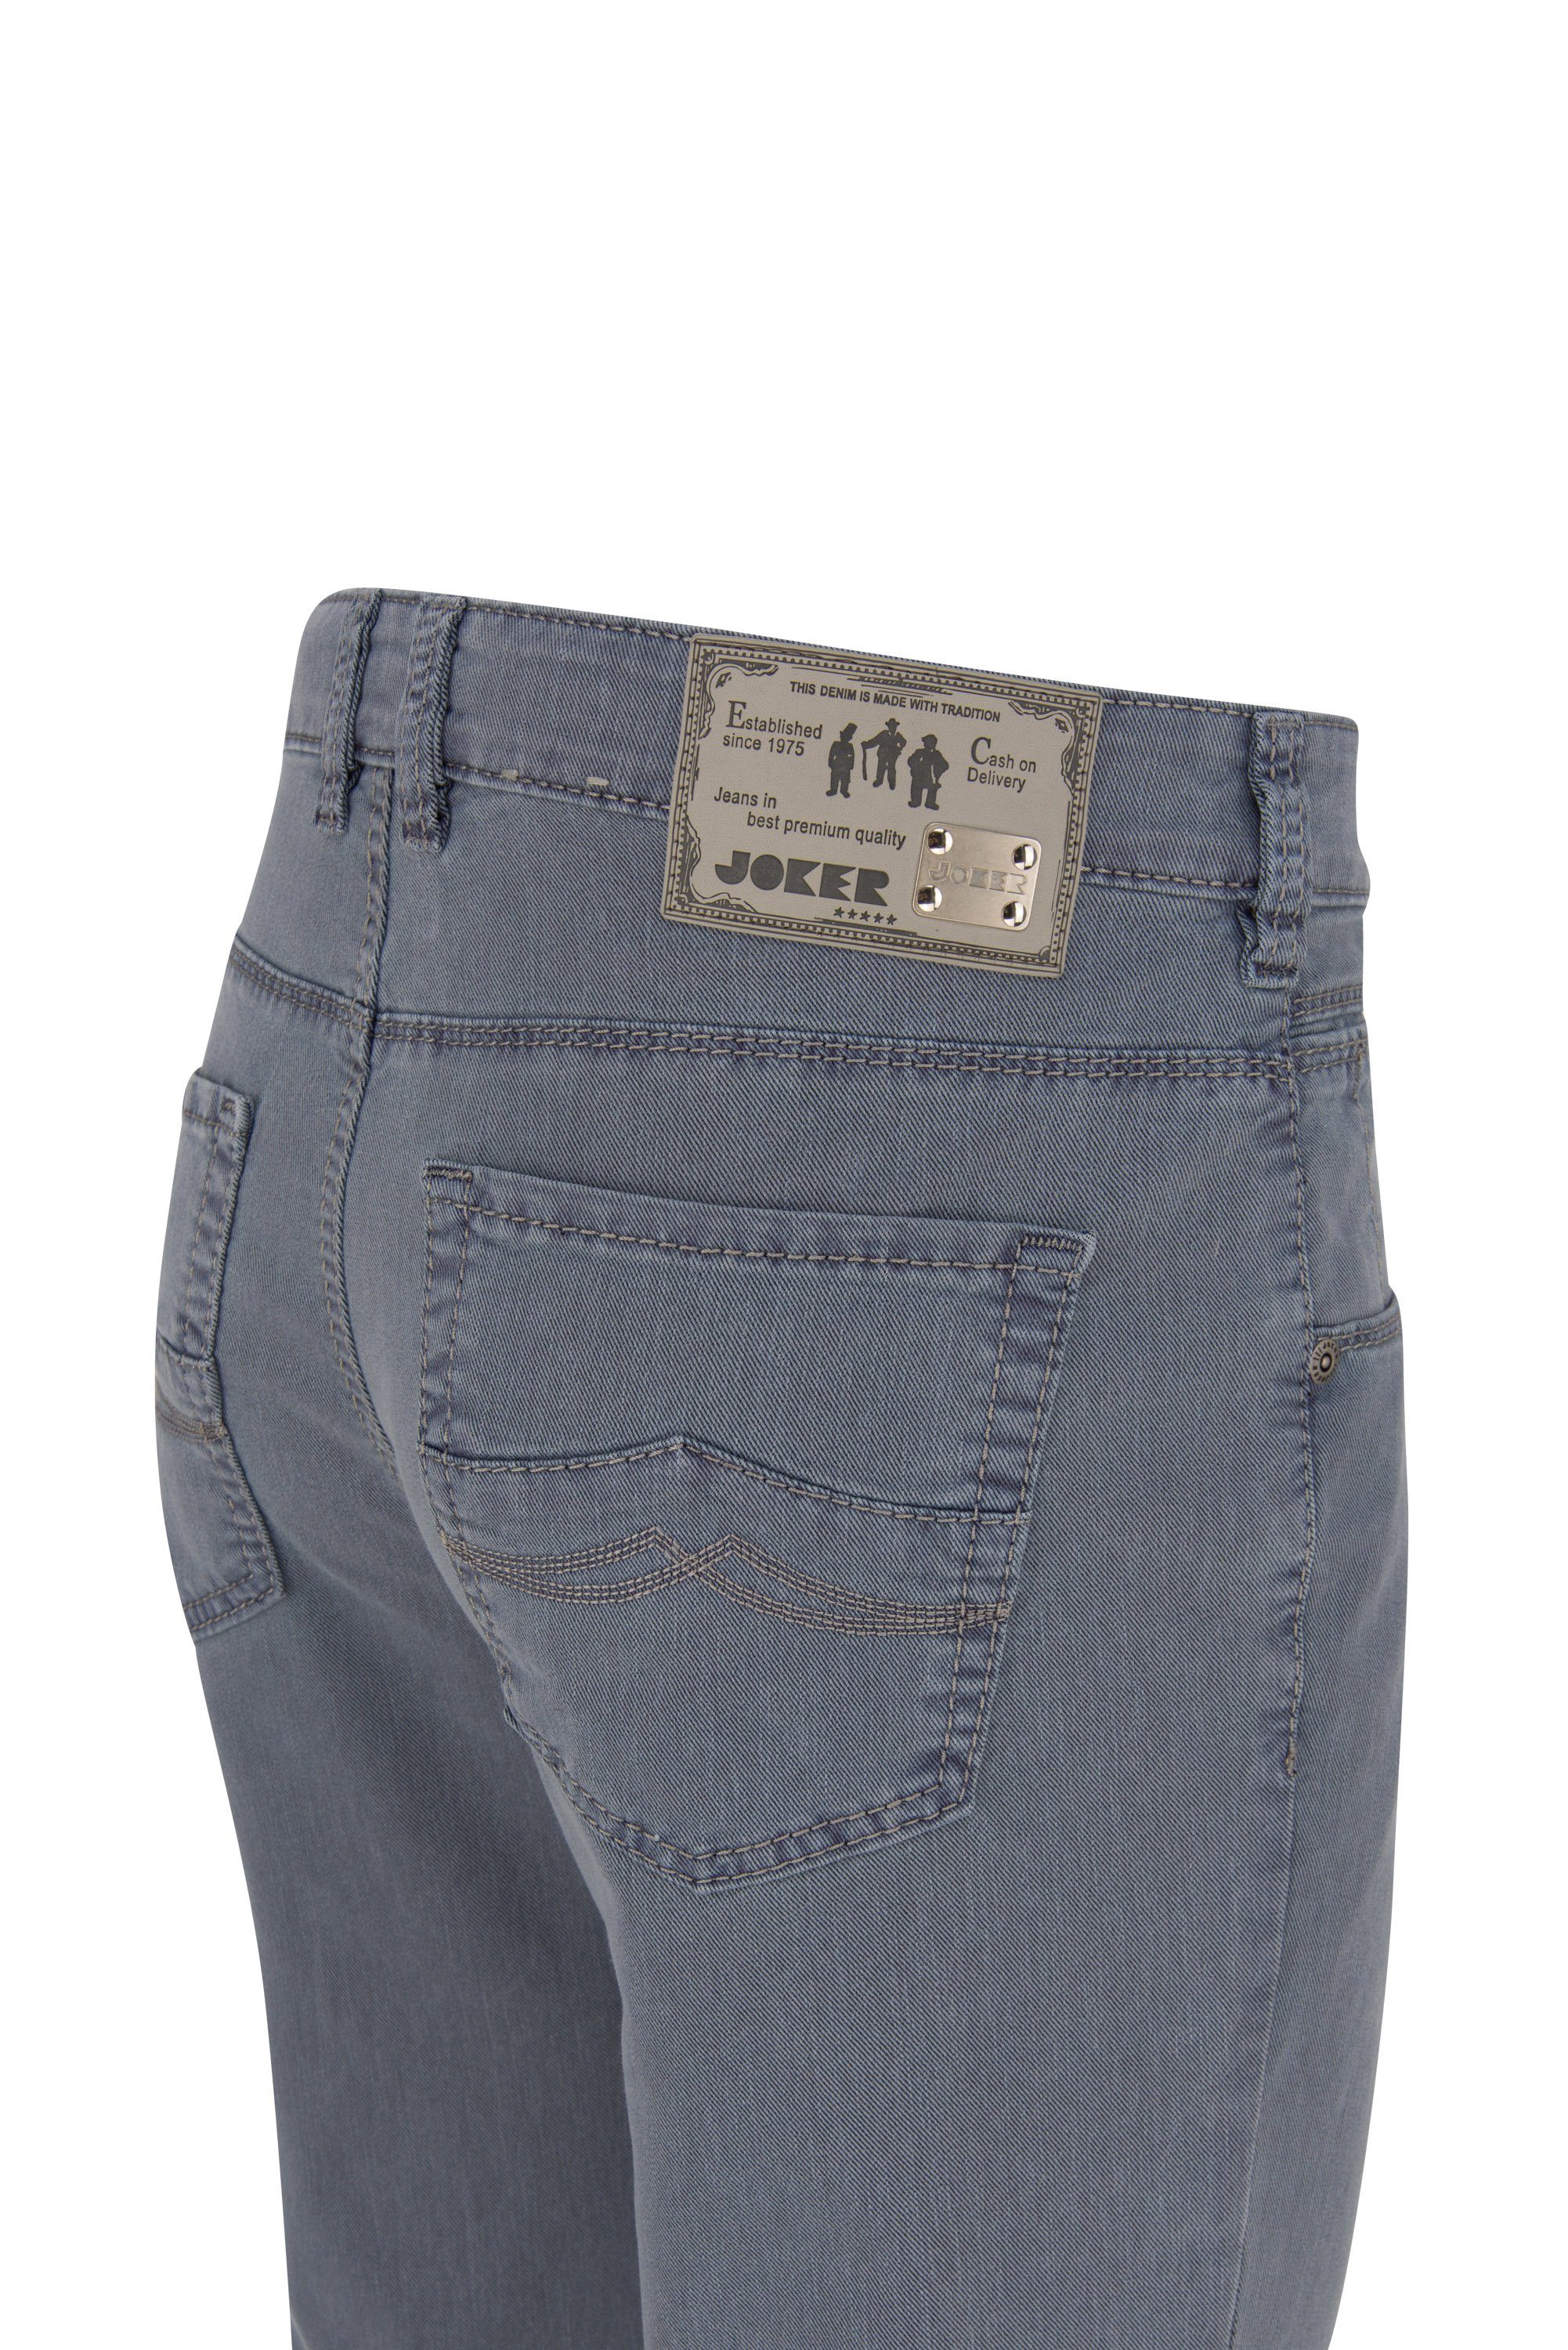 - JOKER blue BICOLOUR FREDDY SPECIAL 5-Pocket-Jeans dusty Joker DYEING 1983455.0226